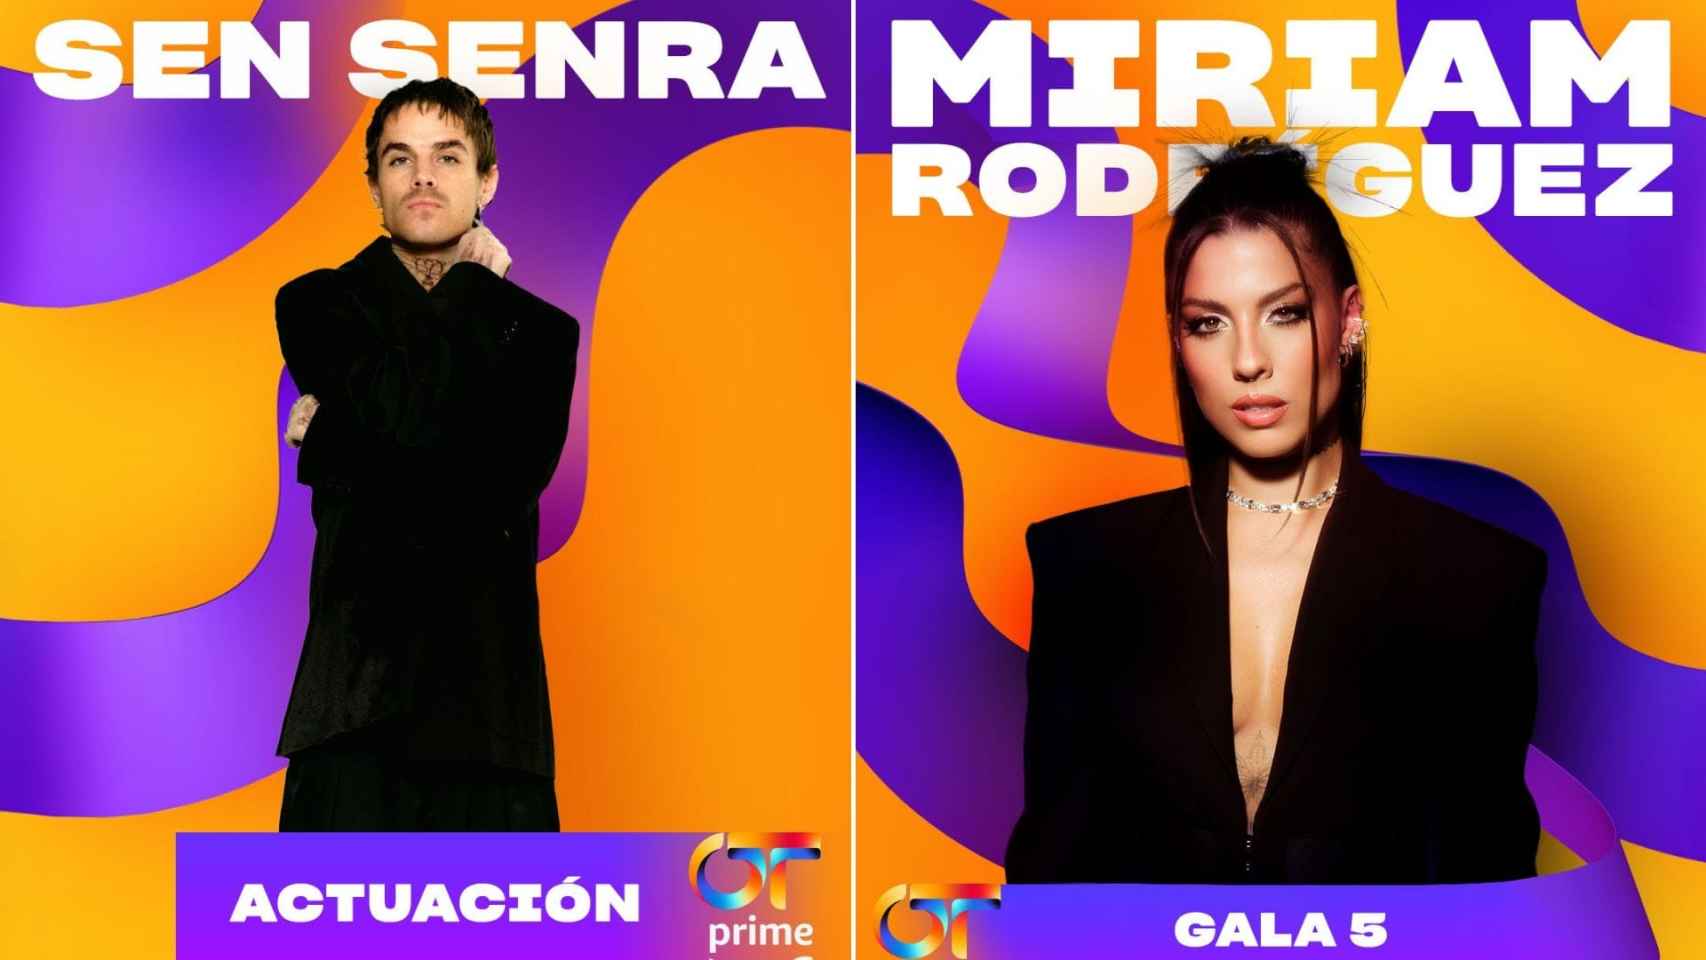 Los gallegos Sen Senra y Miriam Rodríguez estarán en la gala 5 de OT.